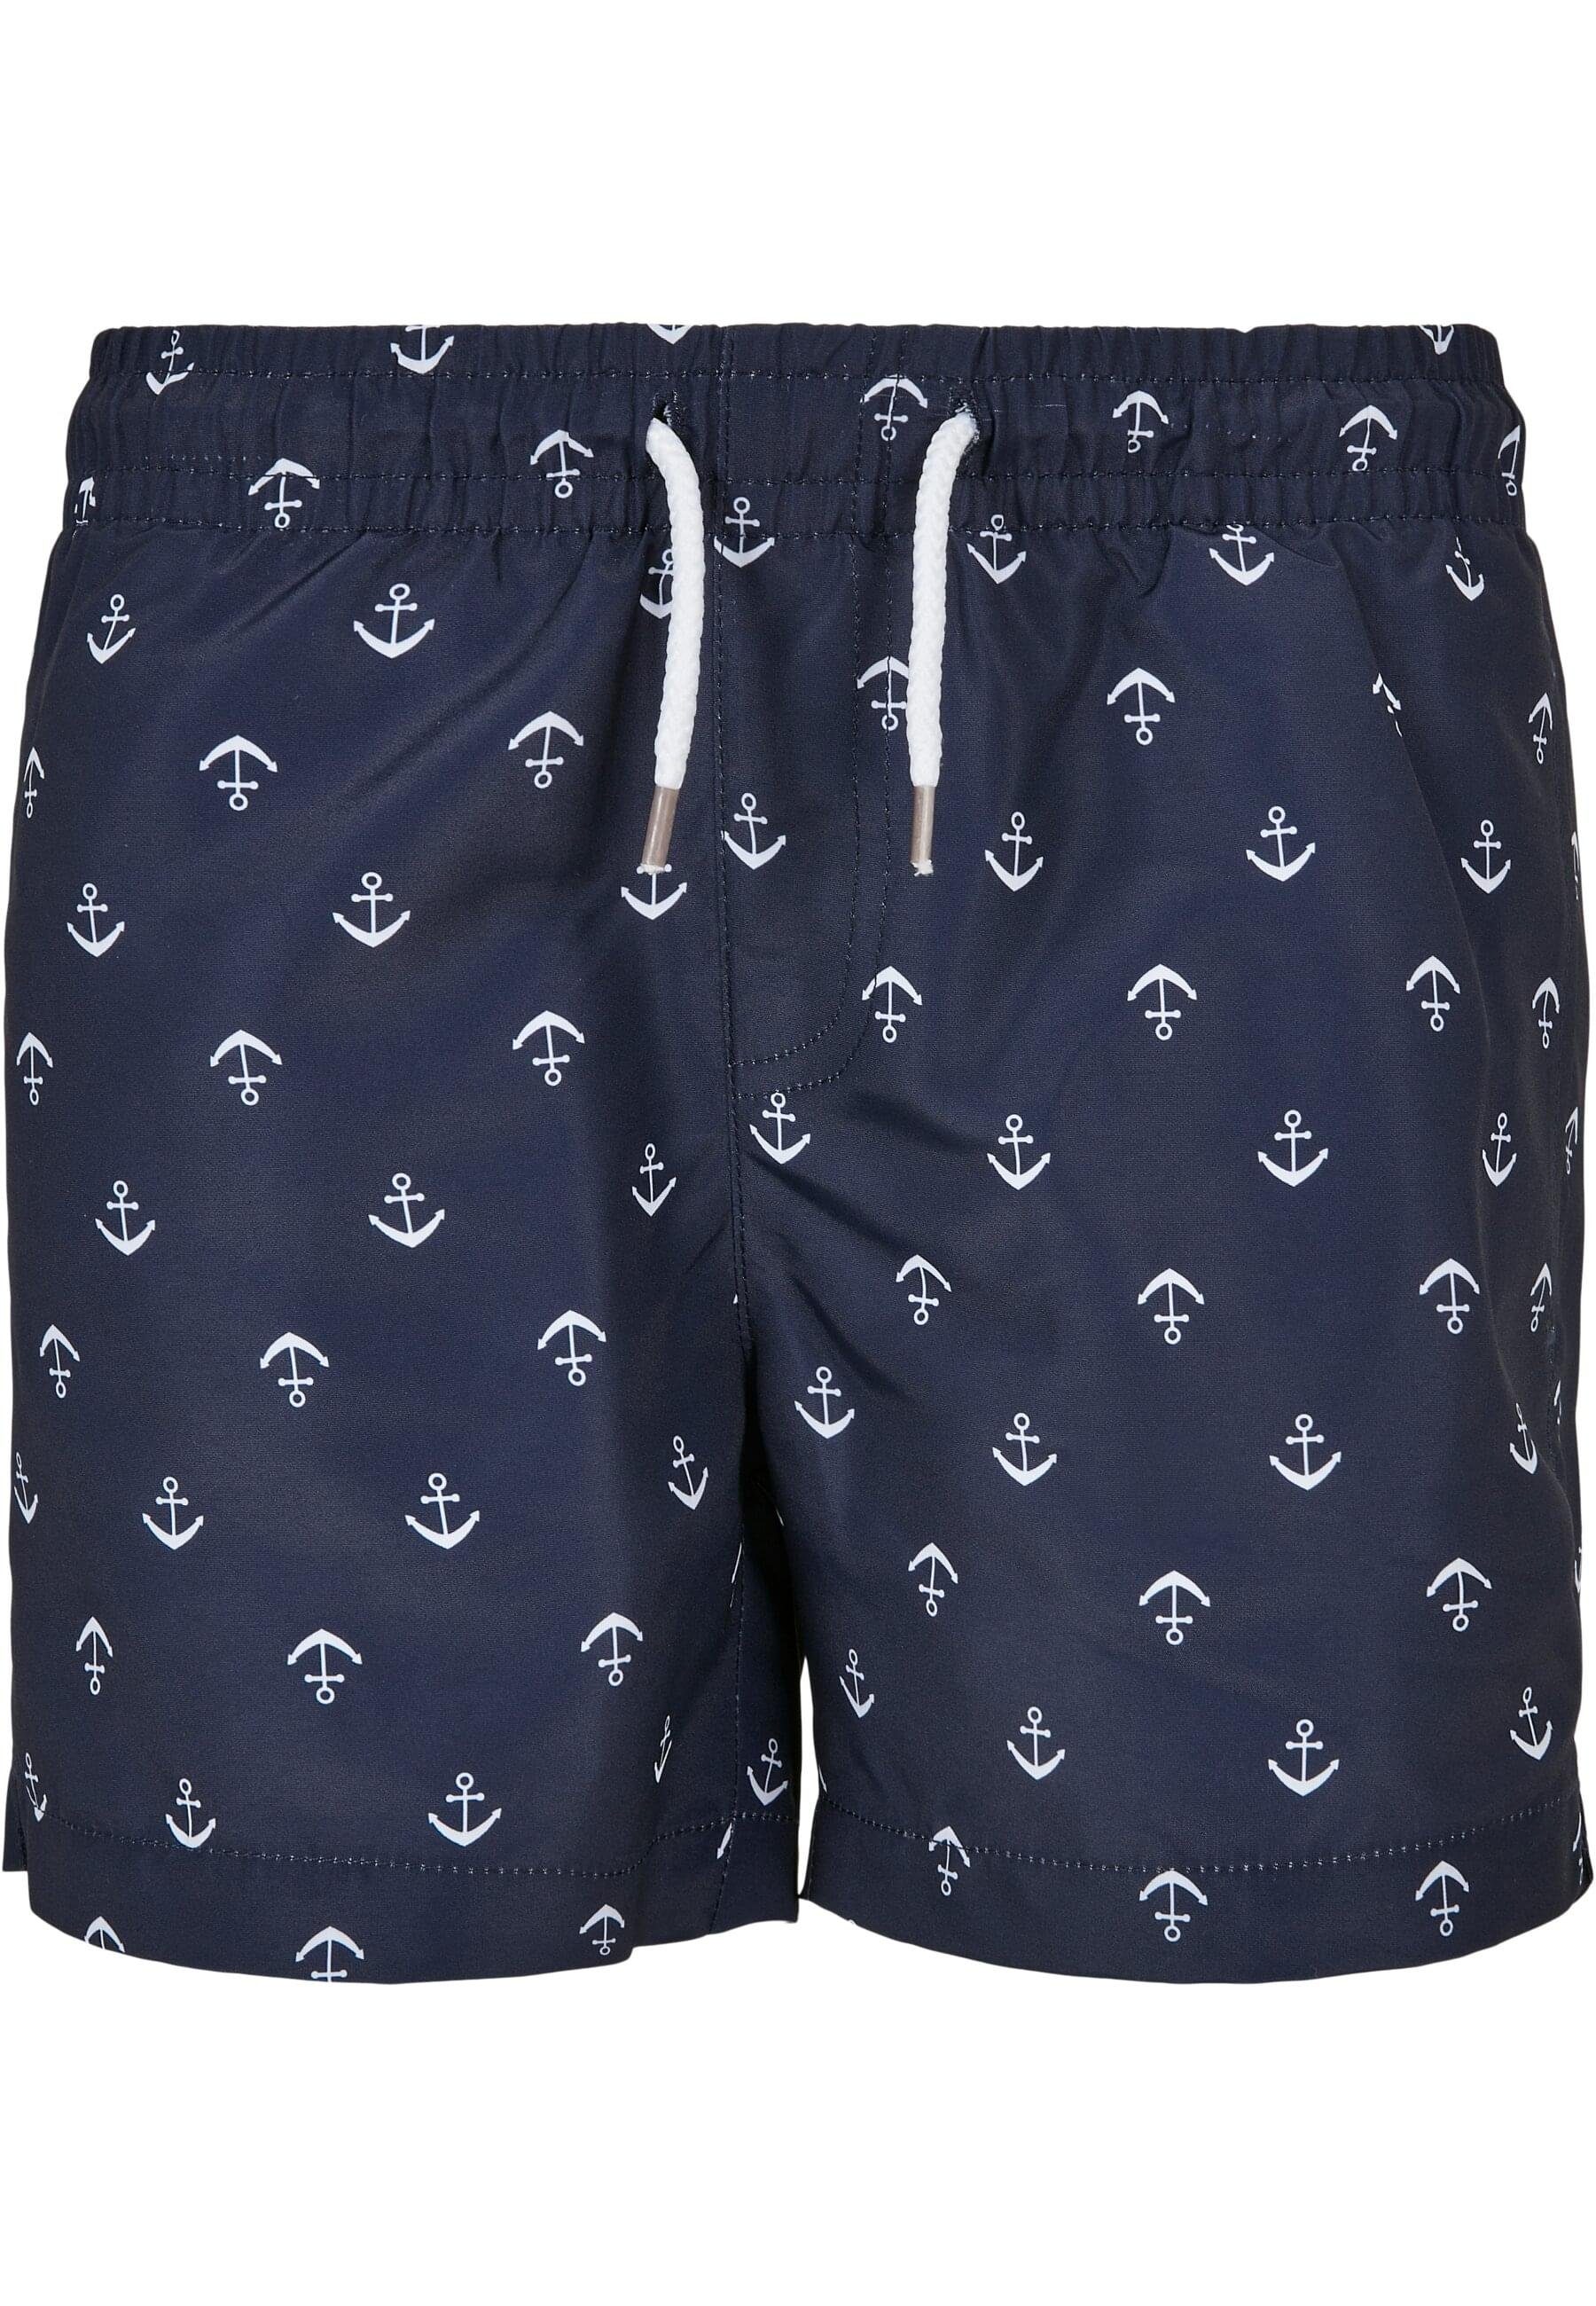 URBAN CLASSICS Badeshorts Swim Pattern Herren Shorts Boys anchor/navy